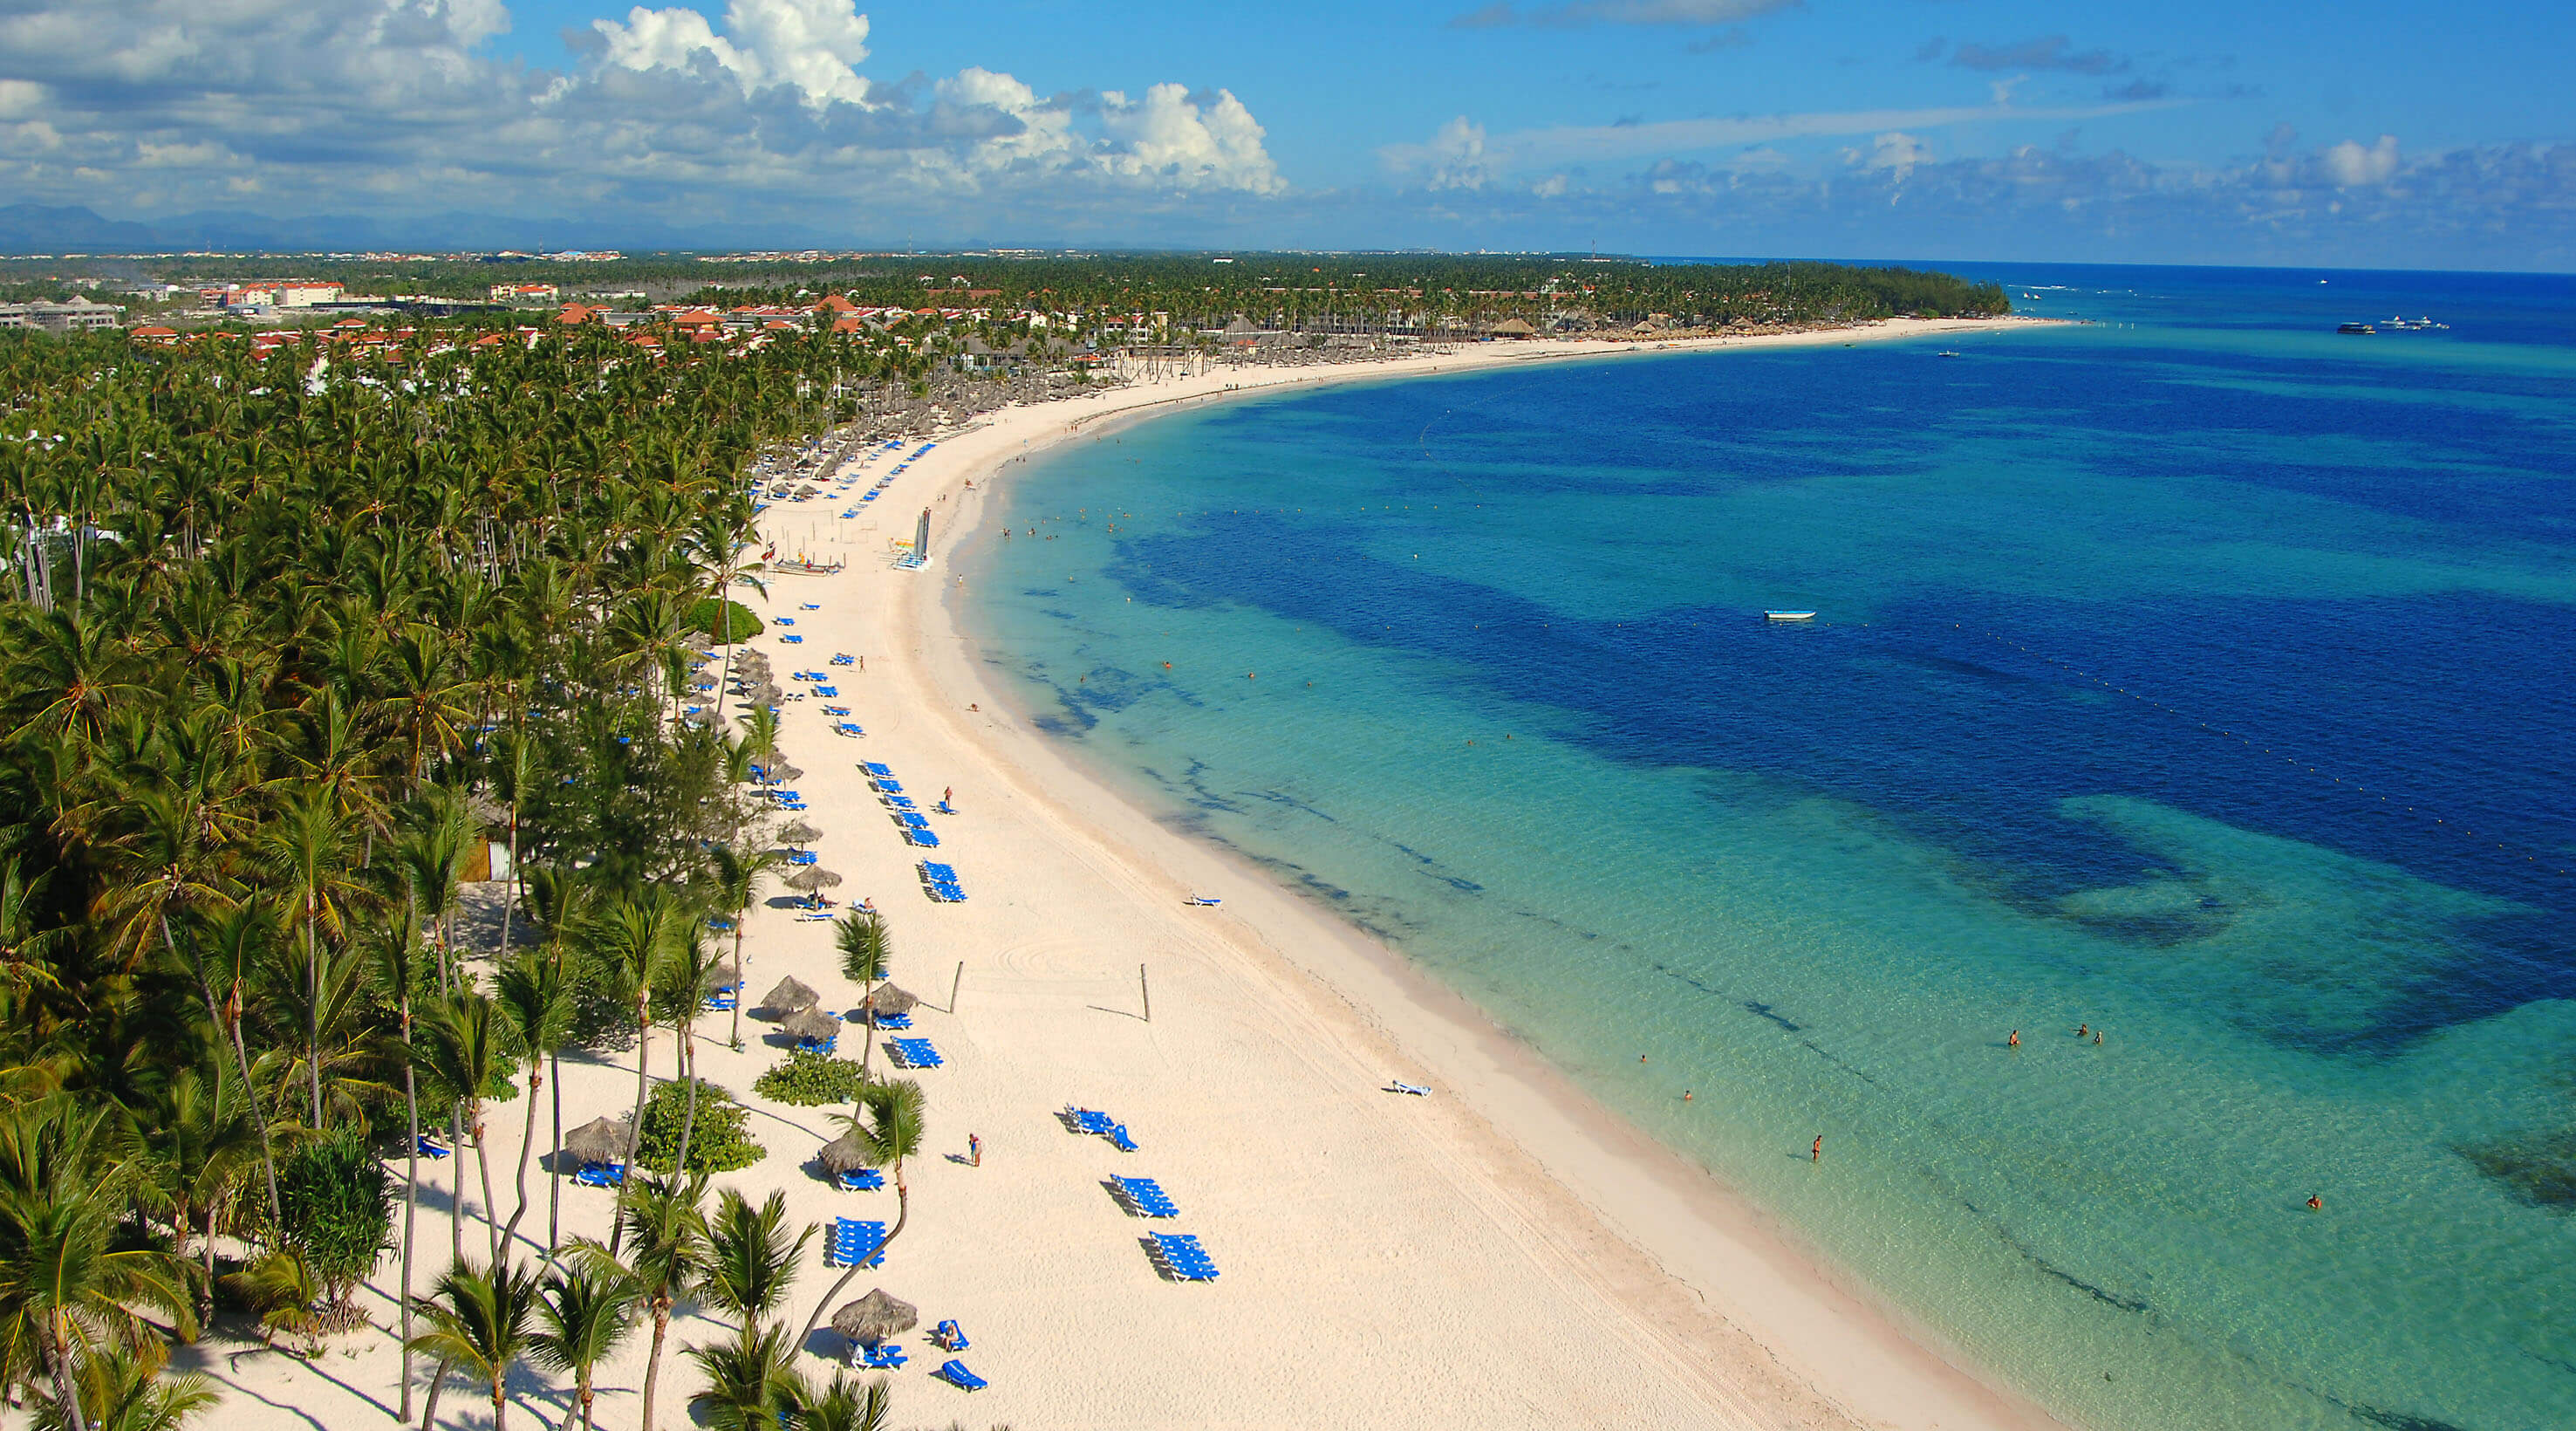 La playa está ubicada al este de ese país, es considerada por la República Dominicana como un tesoro nacional.